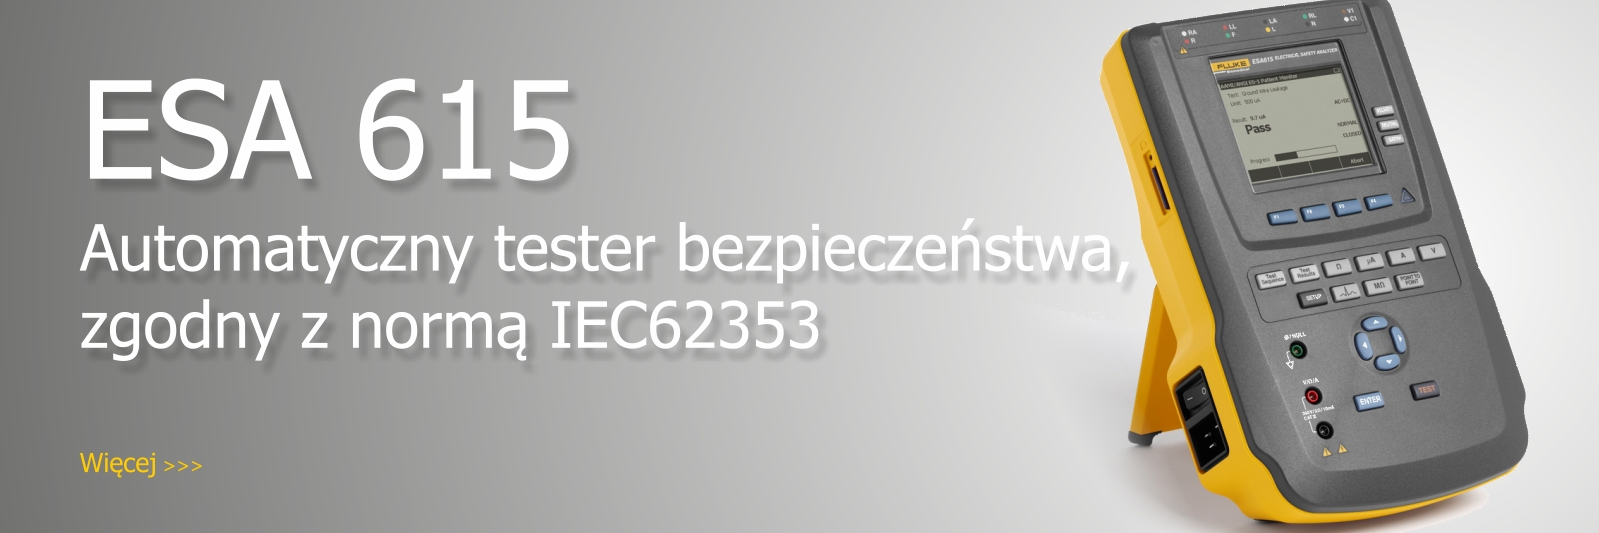 Automatyczny tester bezpieczeństwa ESA615 zgodny z normą IEC62353